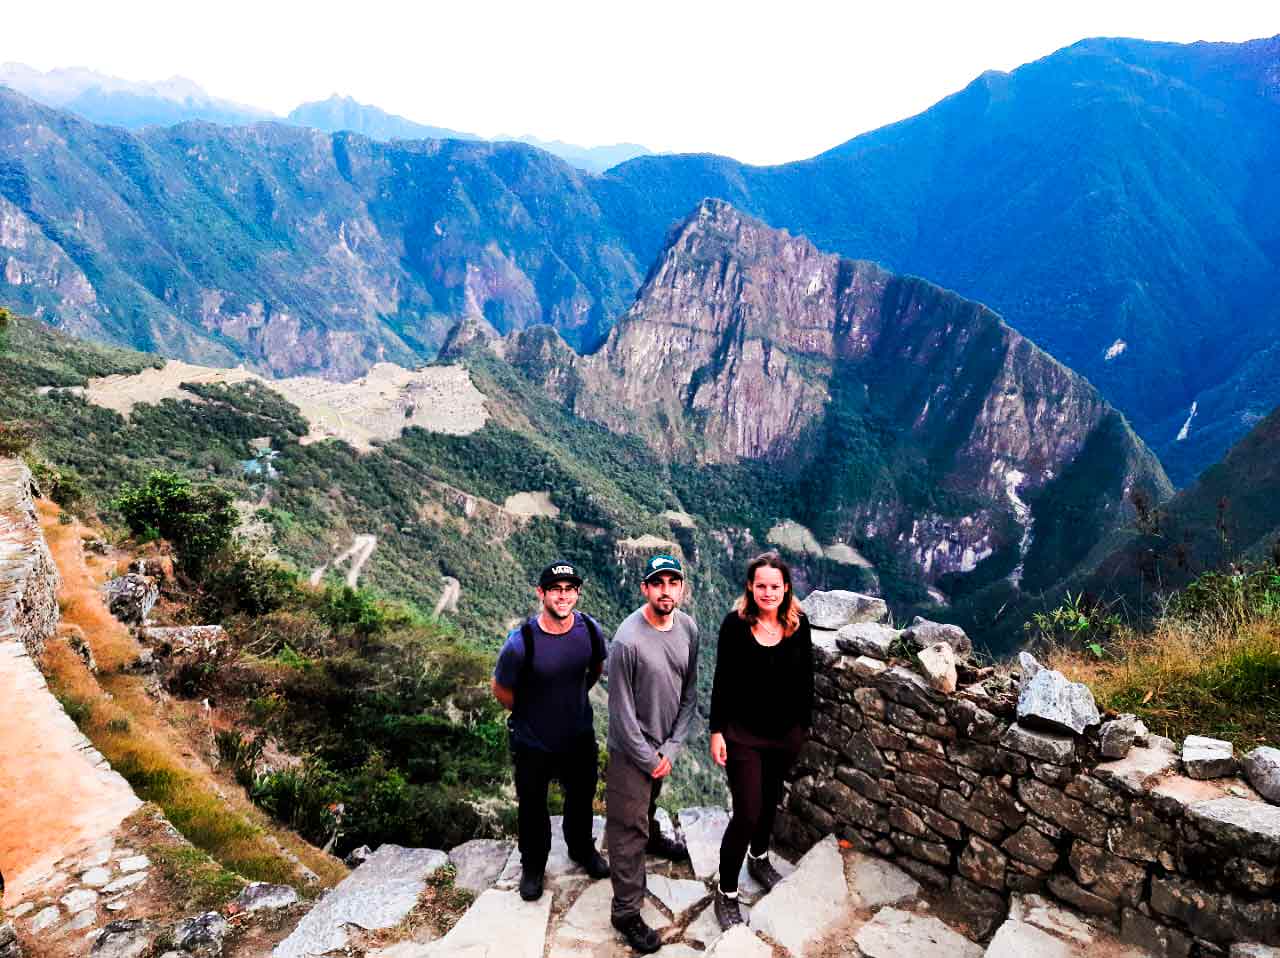 img-Trekking winayhuayna - Intipunku - Machu Picchu - Huayna Picchu / Machu Picchu mountain